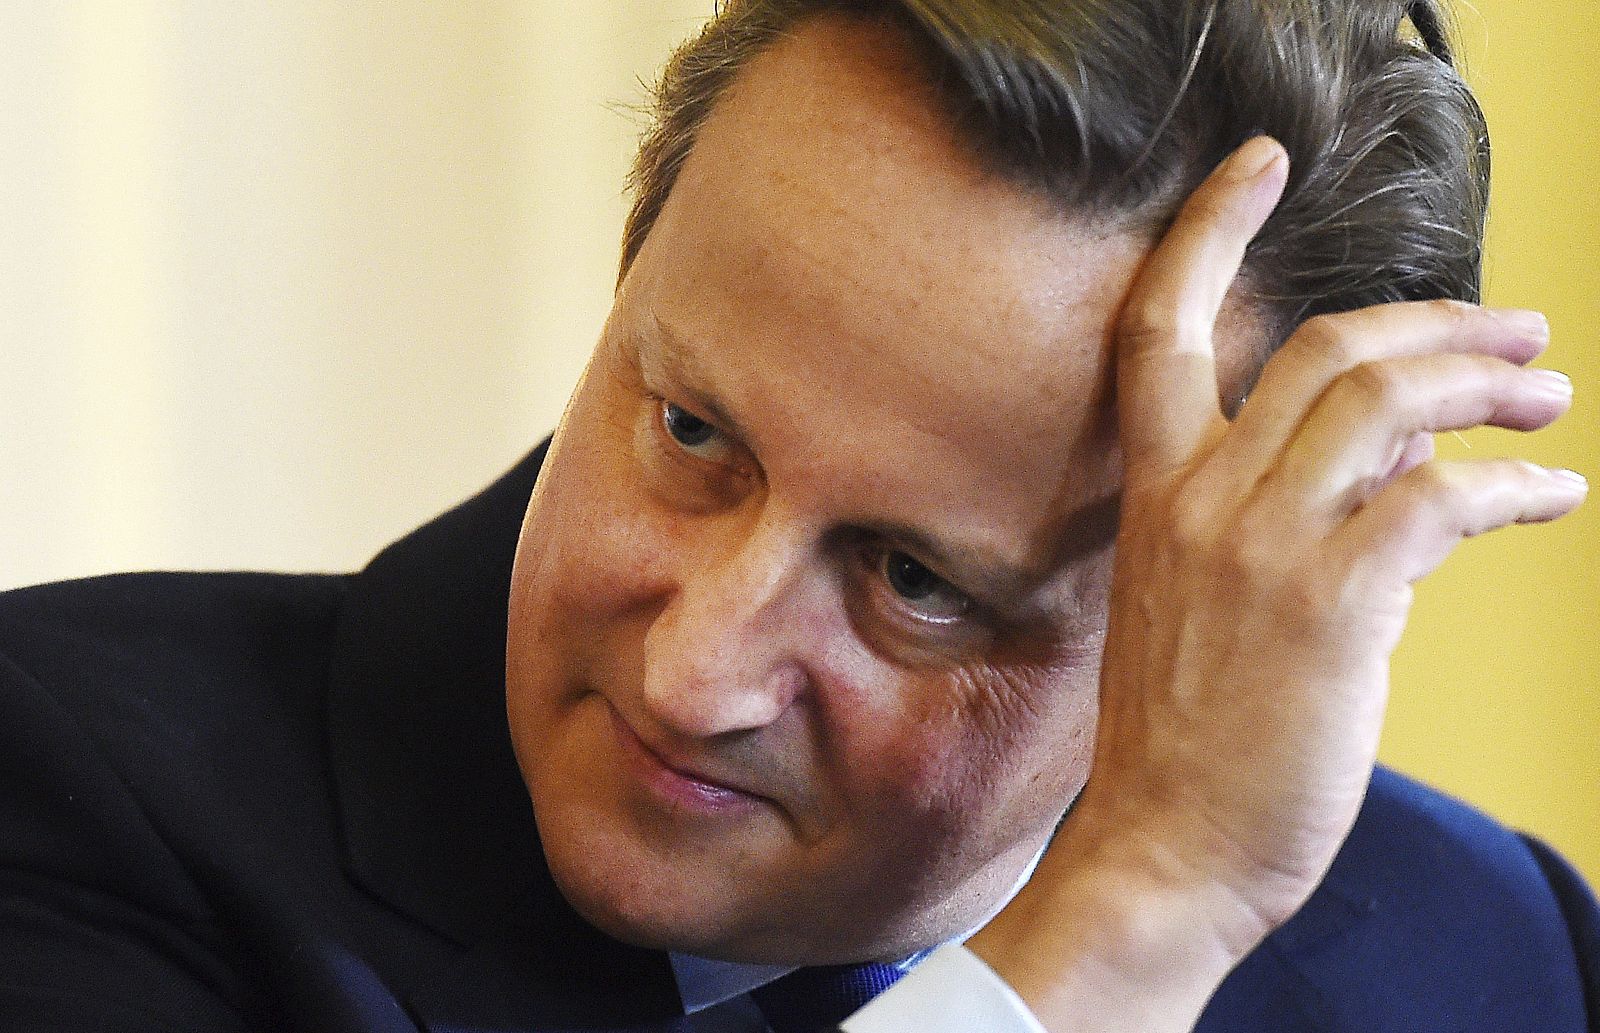 El primer ministro británico, David Cameron, ha rechazado hacer comentarios sobre la polémica biografía.